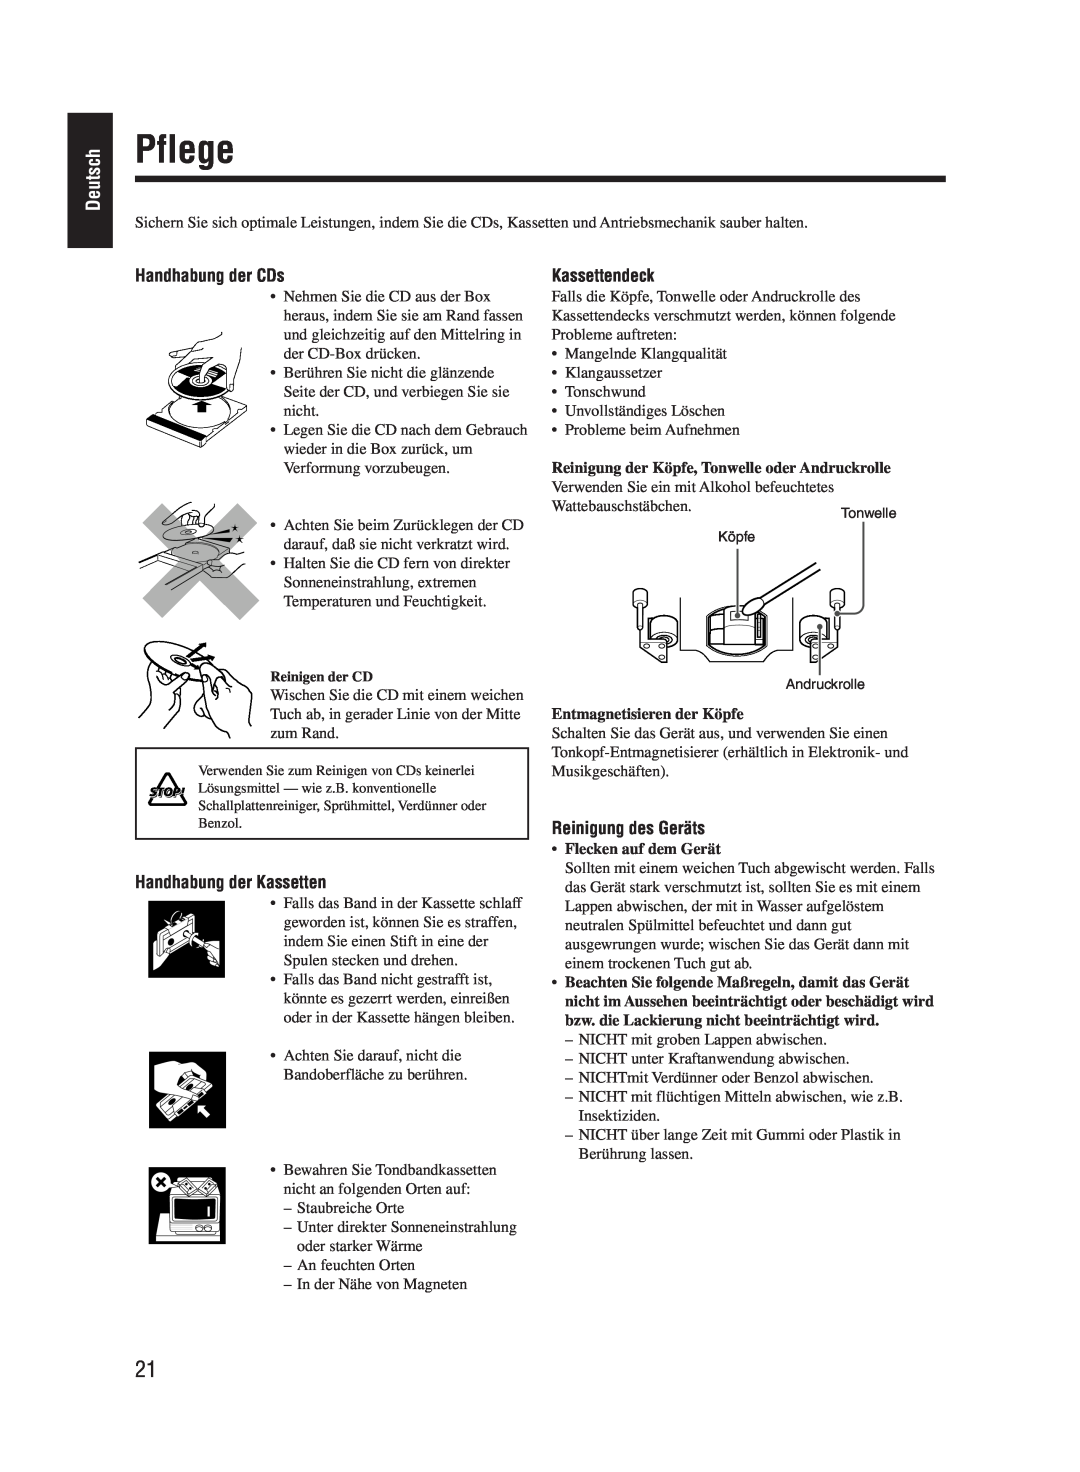 JVC UX-M55 manual Pflege, Deutsch, Handhabung der CDs, Kassettendeck, Handhabung der Kassetten, Reinigung des Geräts 